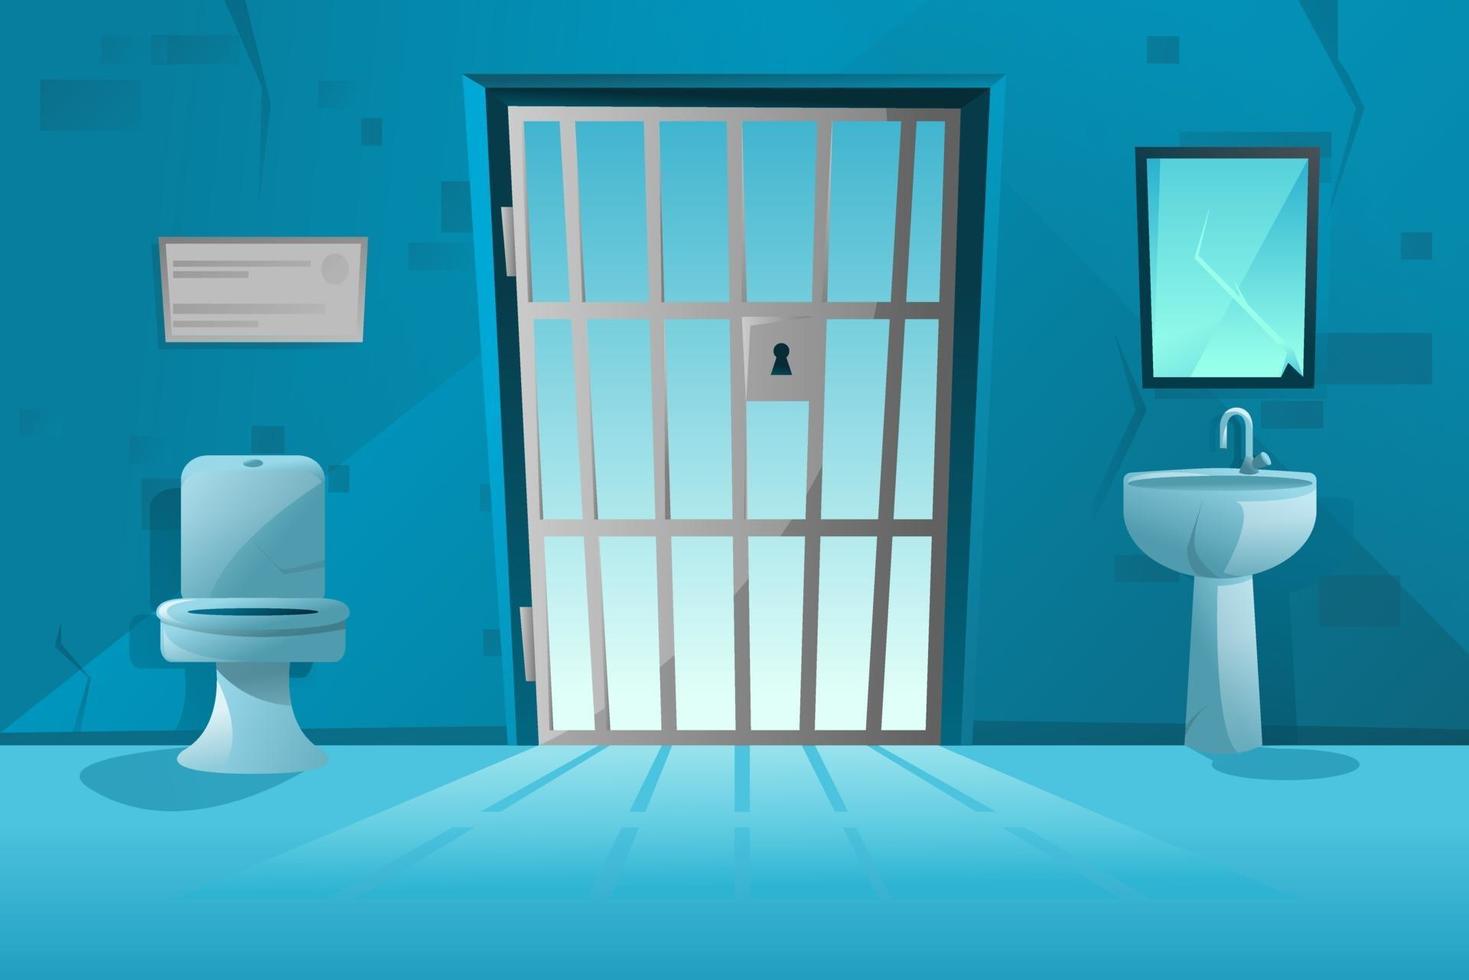 Intérieur de la cellule de prison avec treillis, porte grillagée, cuvette des toilettes, lavabo et miroir brisé, murs sales. salle de prison. vecteur de dessin animé